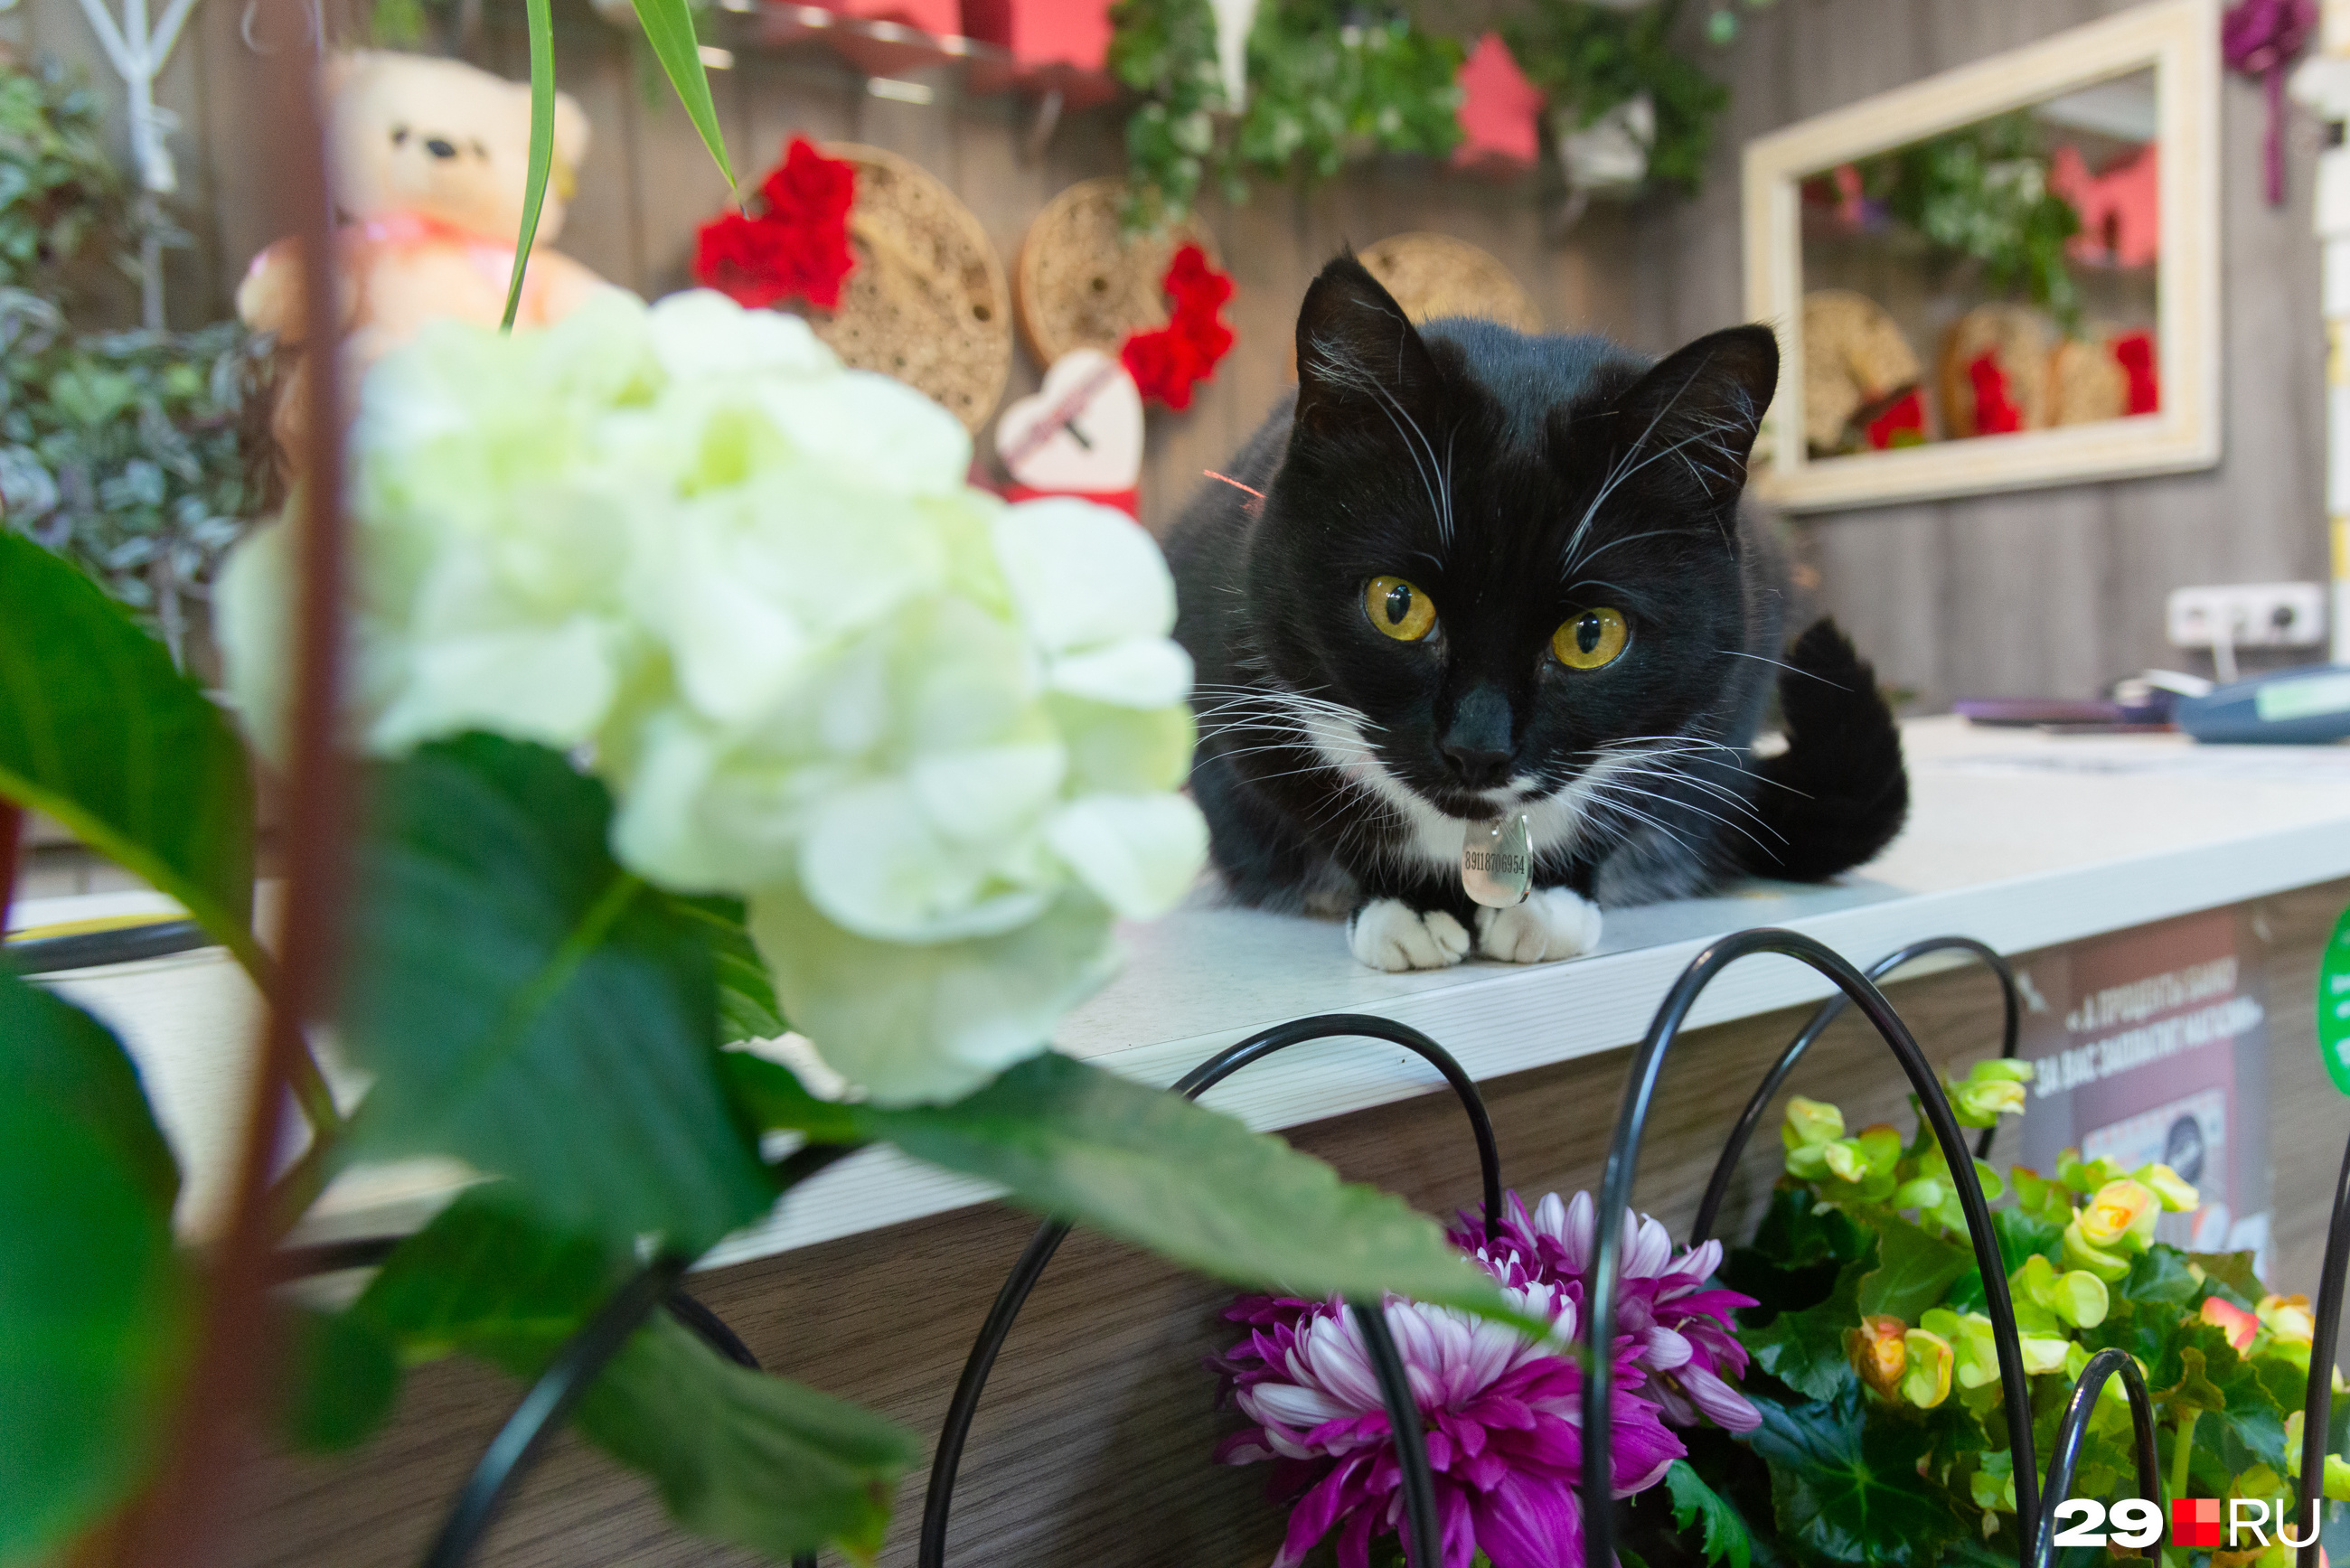 Количество посетителей в «Первом цветочном» после появления кошки только возросло